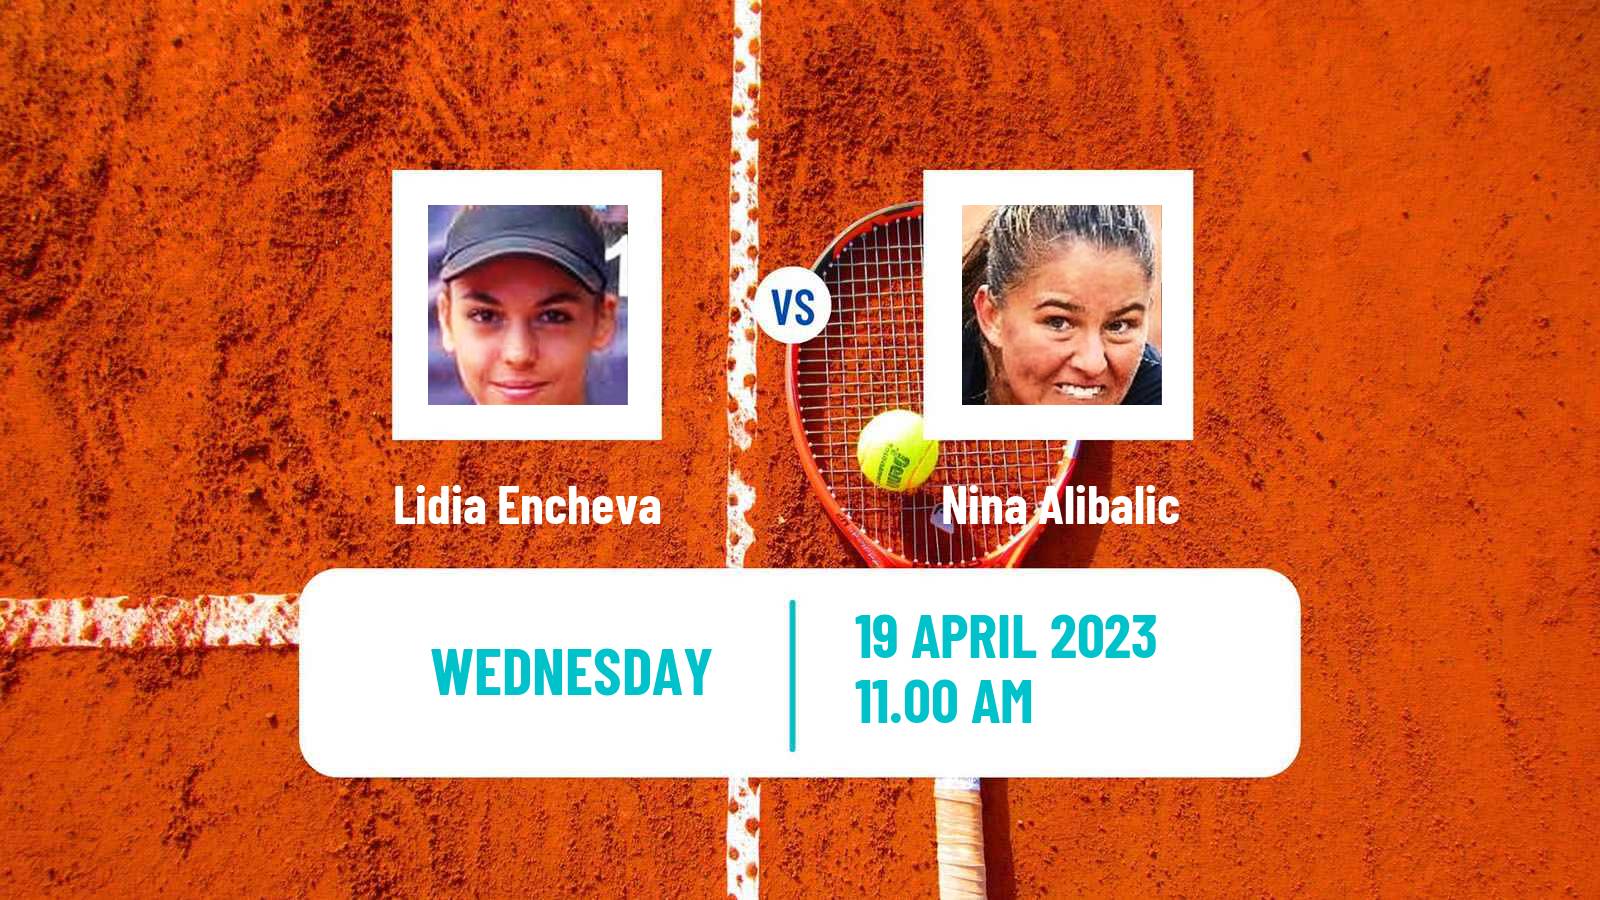 Tennis ITF Tournaments Lidia Encheva - Nina Alibalic